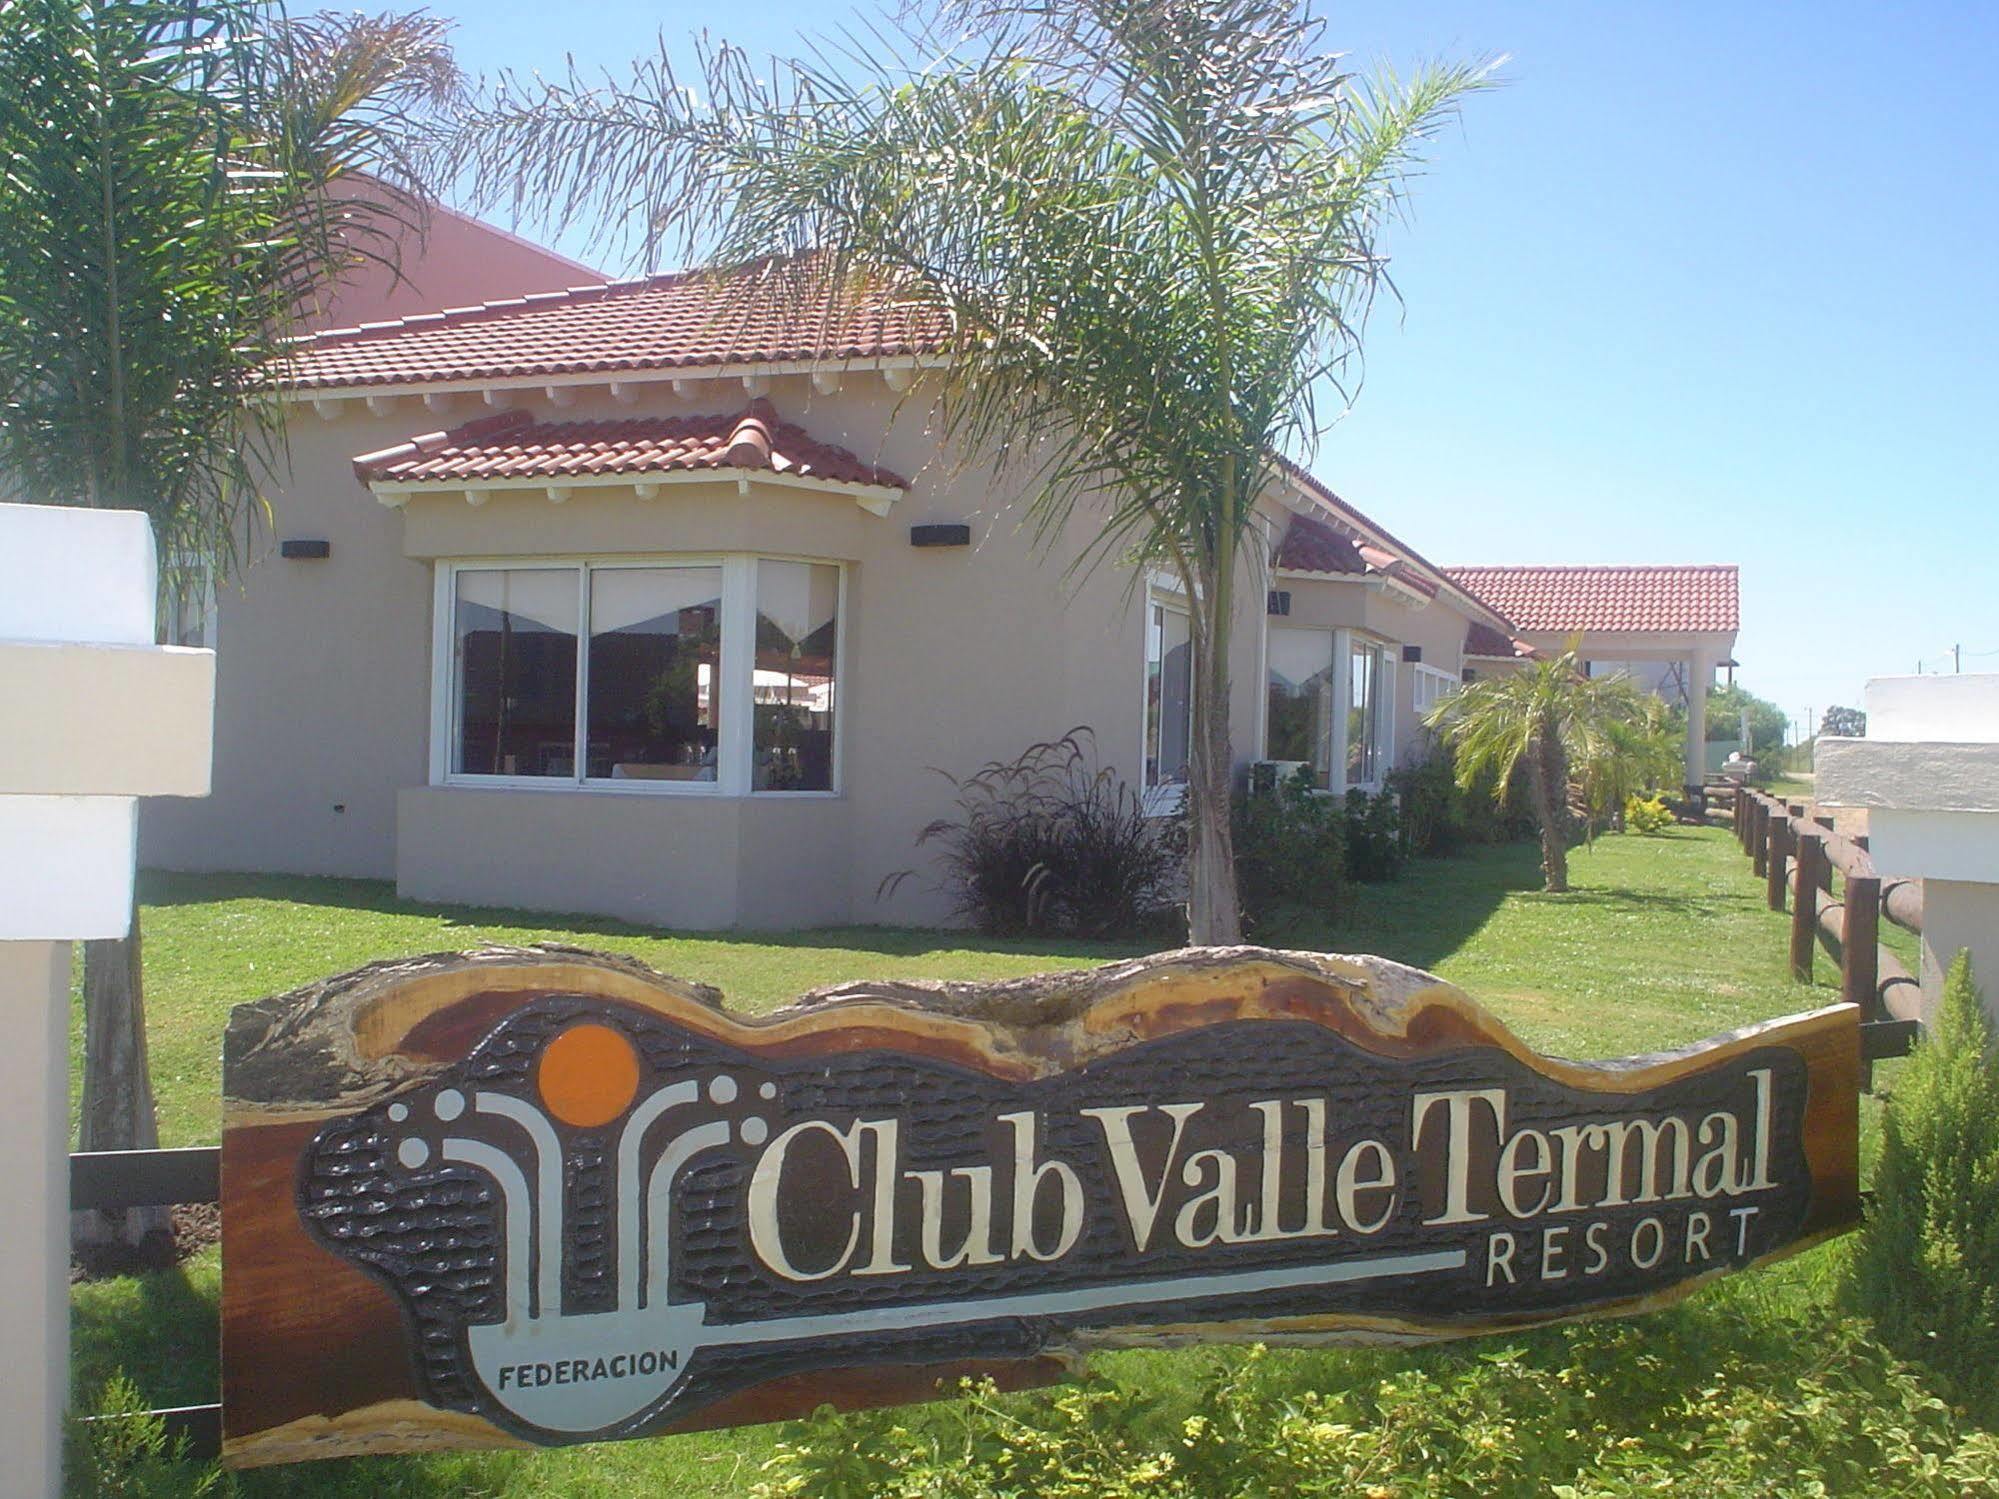 Club Valle Termal Resort Federacion Bagian luar foto